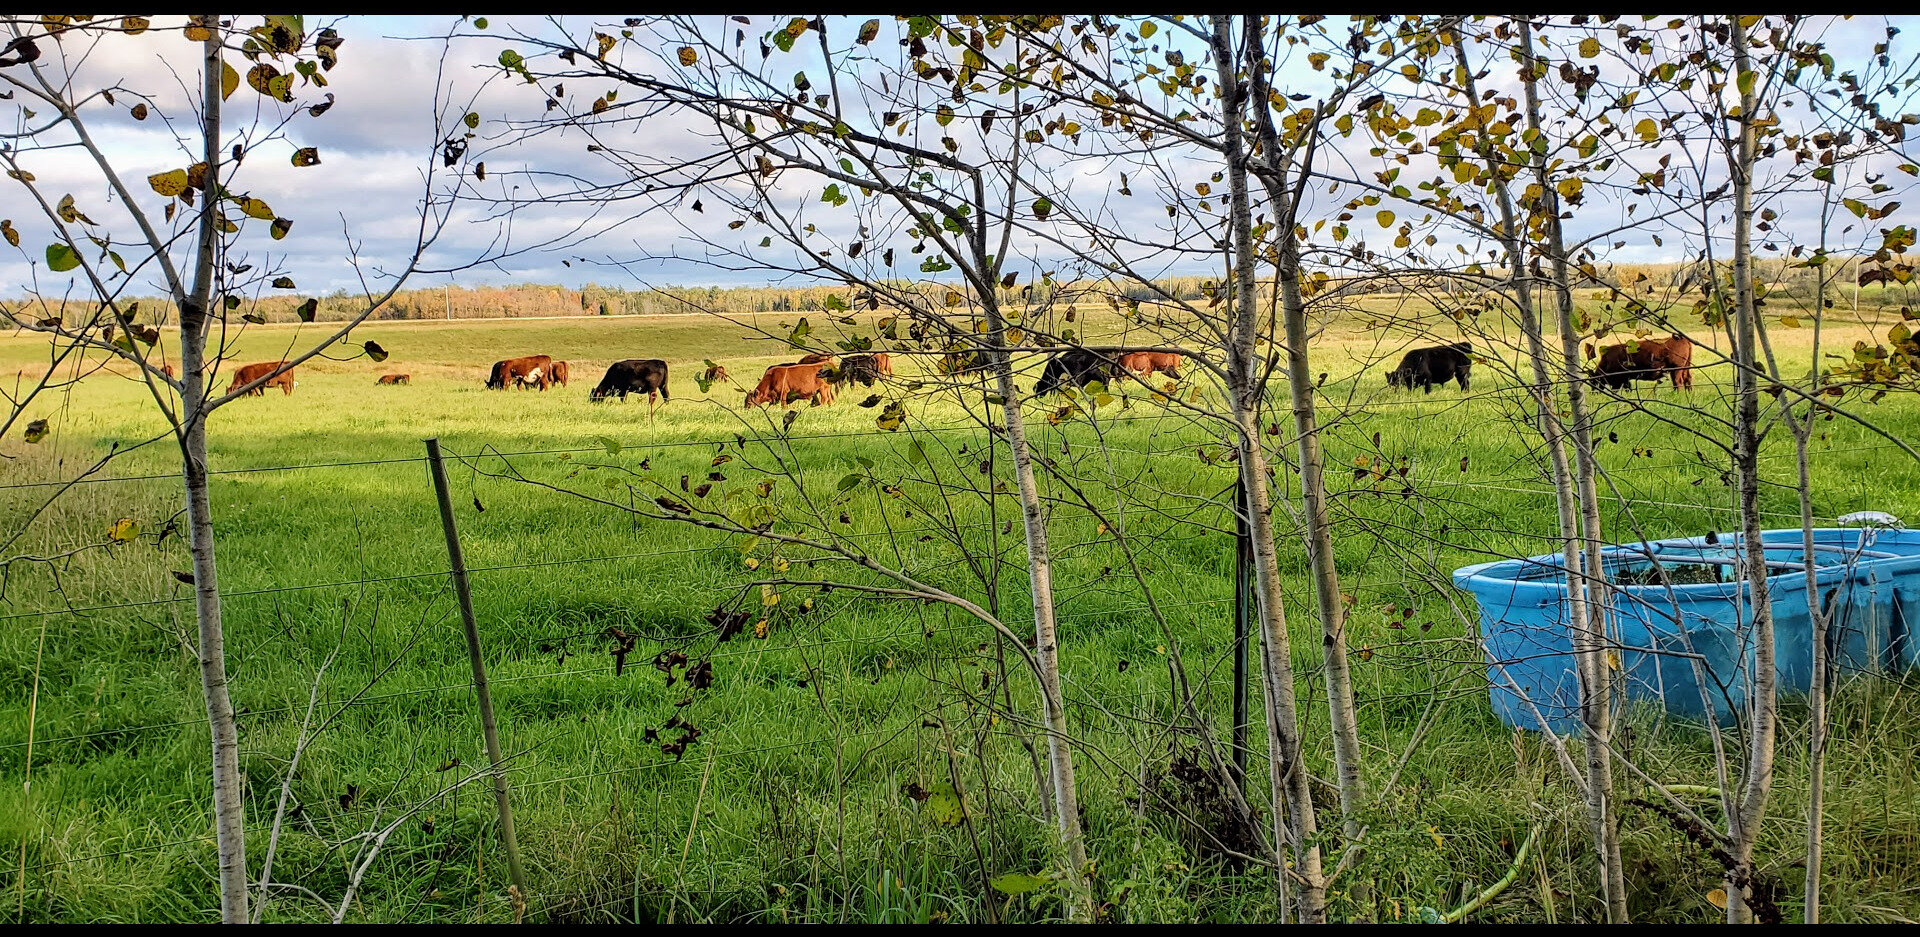 Cattle Grazing a Michigan Pasture.jpg